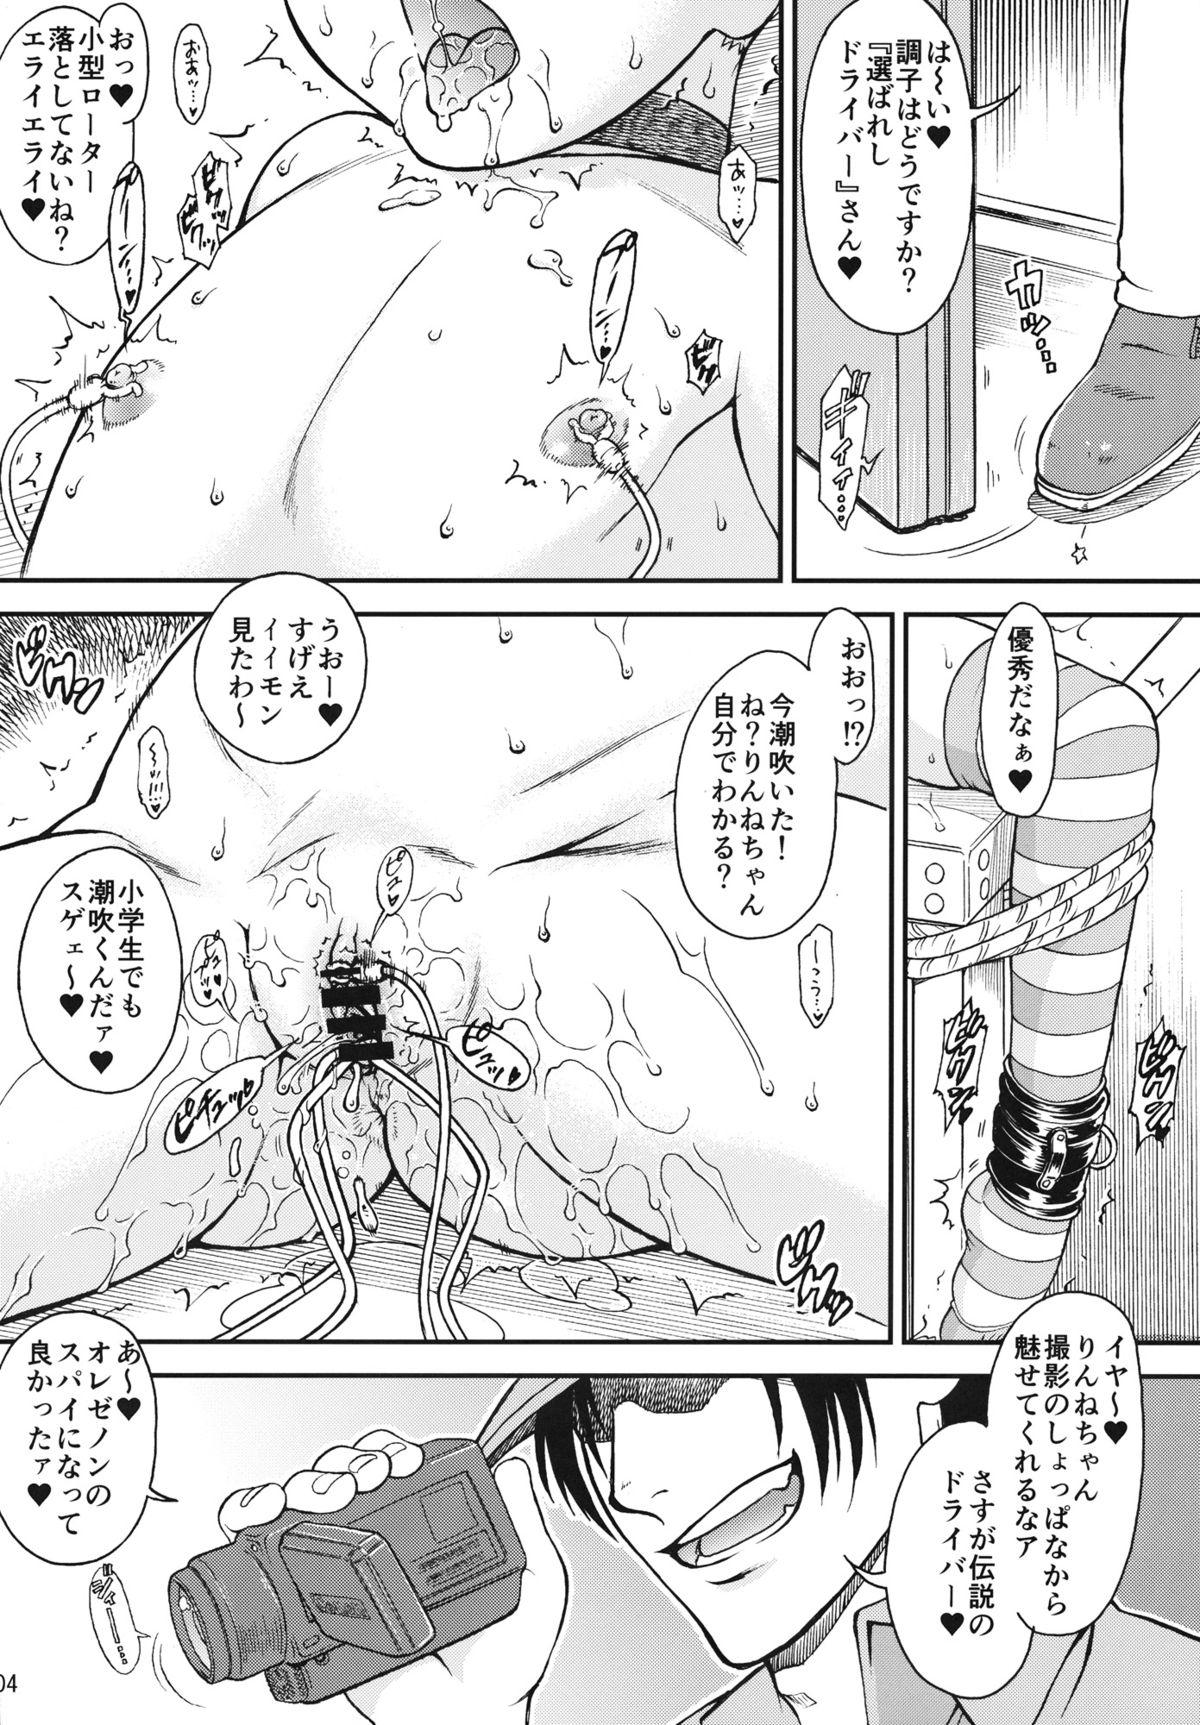 Cheating (C84) [Idenshi no Fune (Nanjou Asuka)] R-R ~After~ 02 (Chousoku Henkei Gyrozetter) - Chousoku henkei gyrozetter Buttfucking - Page 5